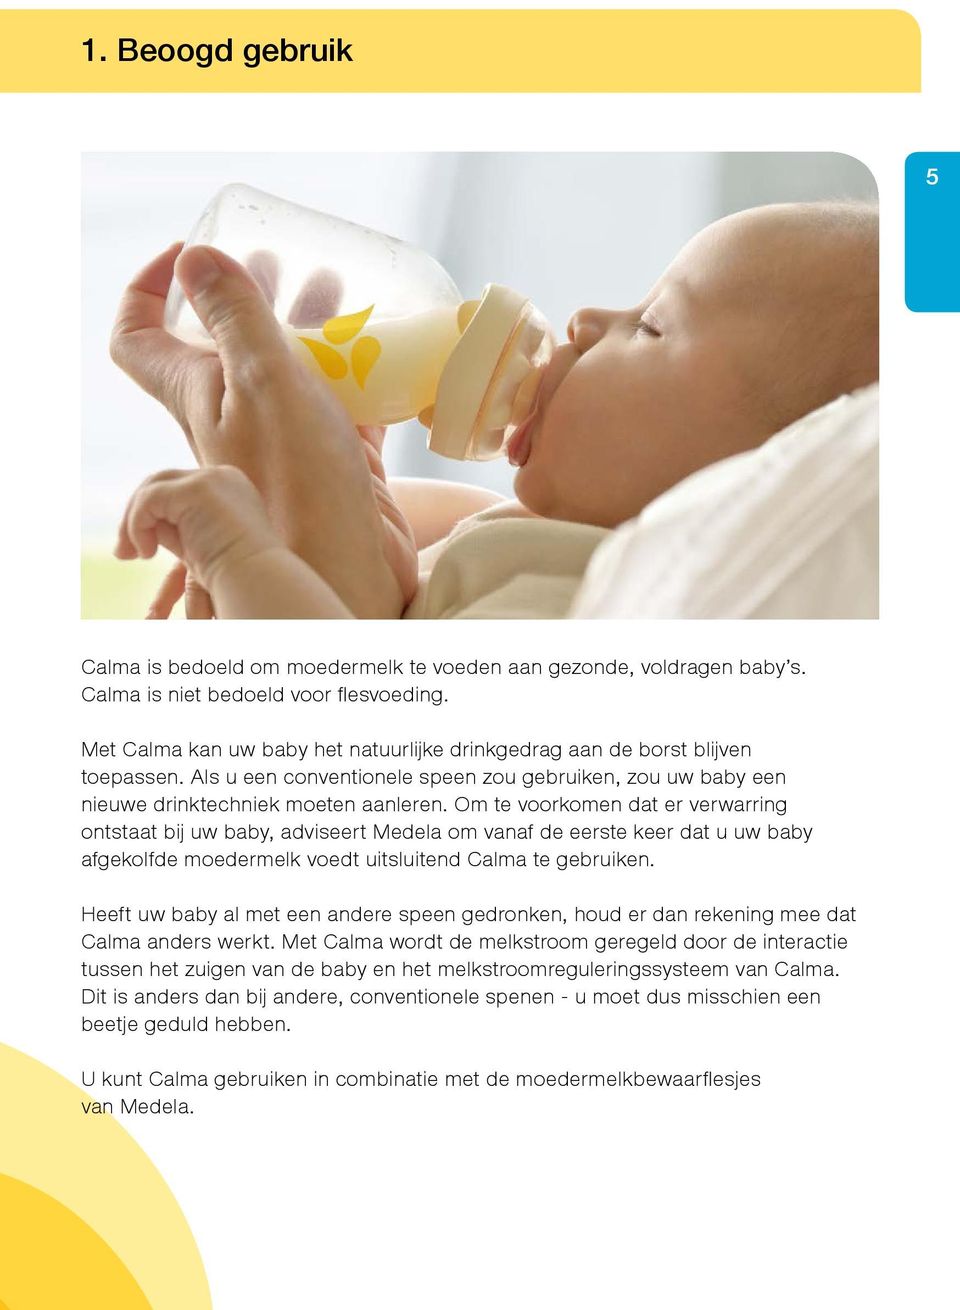 Om te voorkomen dat er verwarring ontstaat bij uw baby, adviseert Medela om vanaf de eerste keer dat u uw baby afgekolfde moedermelk voedt uitsluitend Calma te gebruiken.